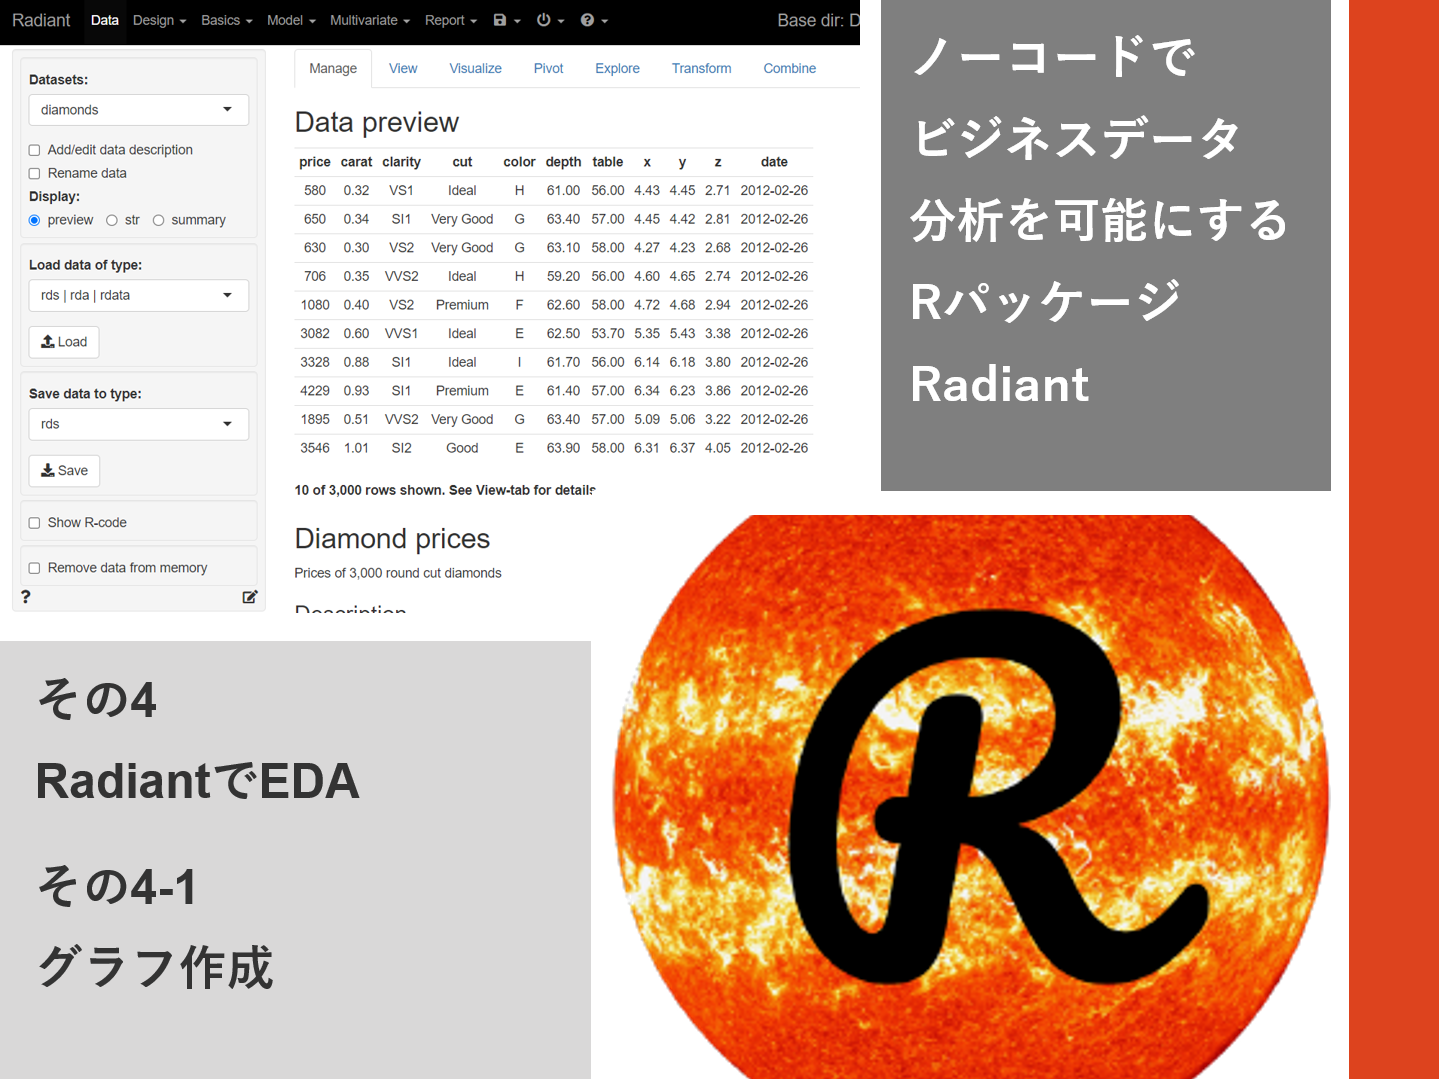 ノーコードでビジネスデータ分析を可能にするRパッケージRadiant<br>その4-1（RadiantでEDA – グラフ作成）